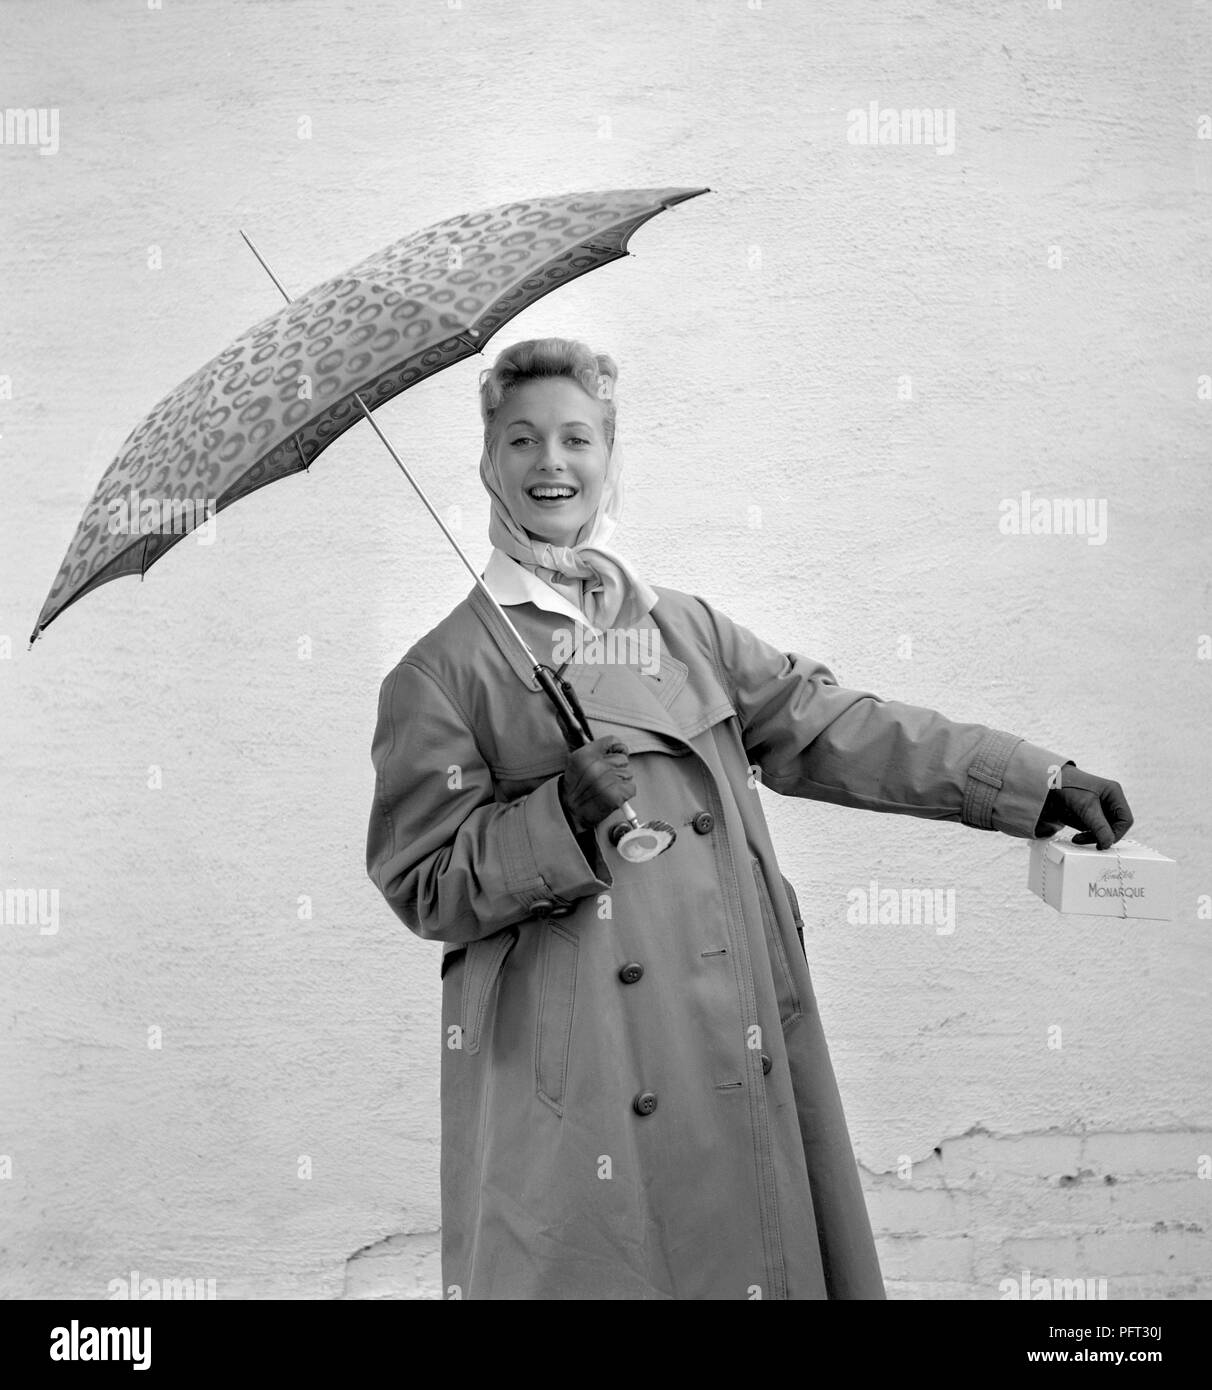 1950 Femme avec parapluie. Une jeune femme tient un parapluie un jour de pluie. Suède 1955 Banque D'Images